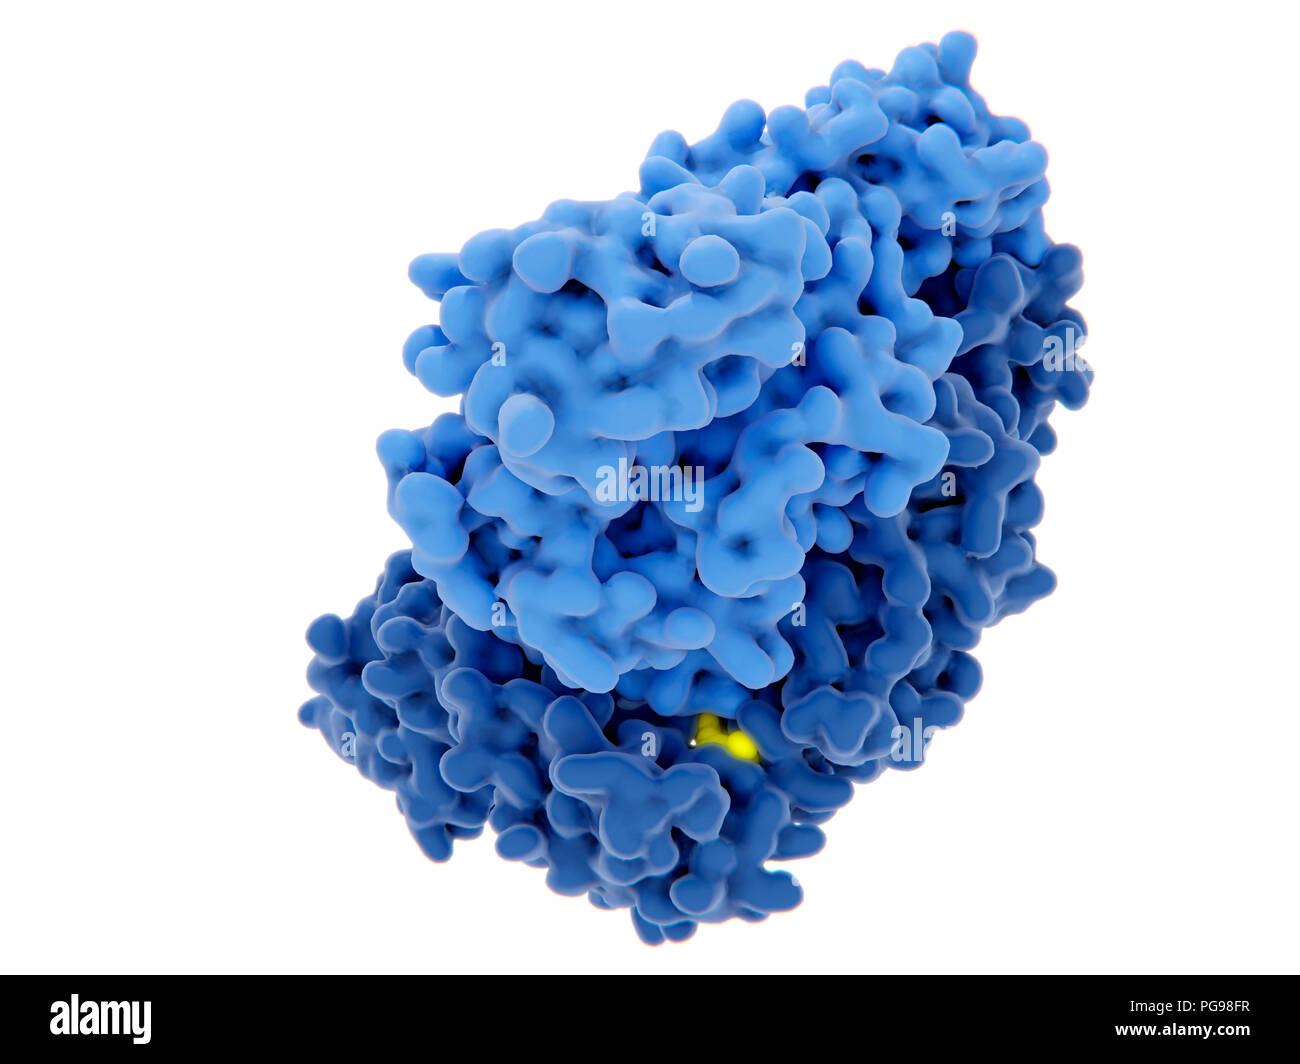 L'inhibition de la transcriptase inverse du VIH-1, de l'illustration. Le virus de l'immunodéficience humaine génome d'ARN simple brin est converti en ADN par la transcriptase inverse virale (bleu), puis l'ADN est intégré dans l'ADN d'une cellule humaine. La transcriptase inverse est une des cibles principales de perturber la multiplication du virus par un inhibiteur. Il y a des inhibiteurs nucléosidiques et nucléotidiques et non nucléosidiques inhibiteurs analogique. L'un de ces inhibiteurs (jaune) est illustré à la liaison de la transcriptase inverse. Banque D'Images